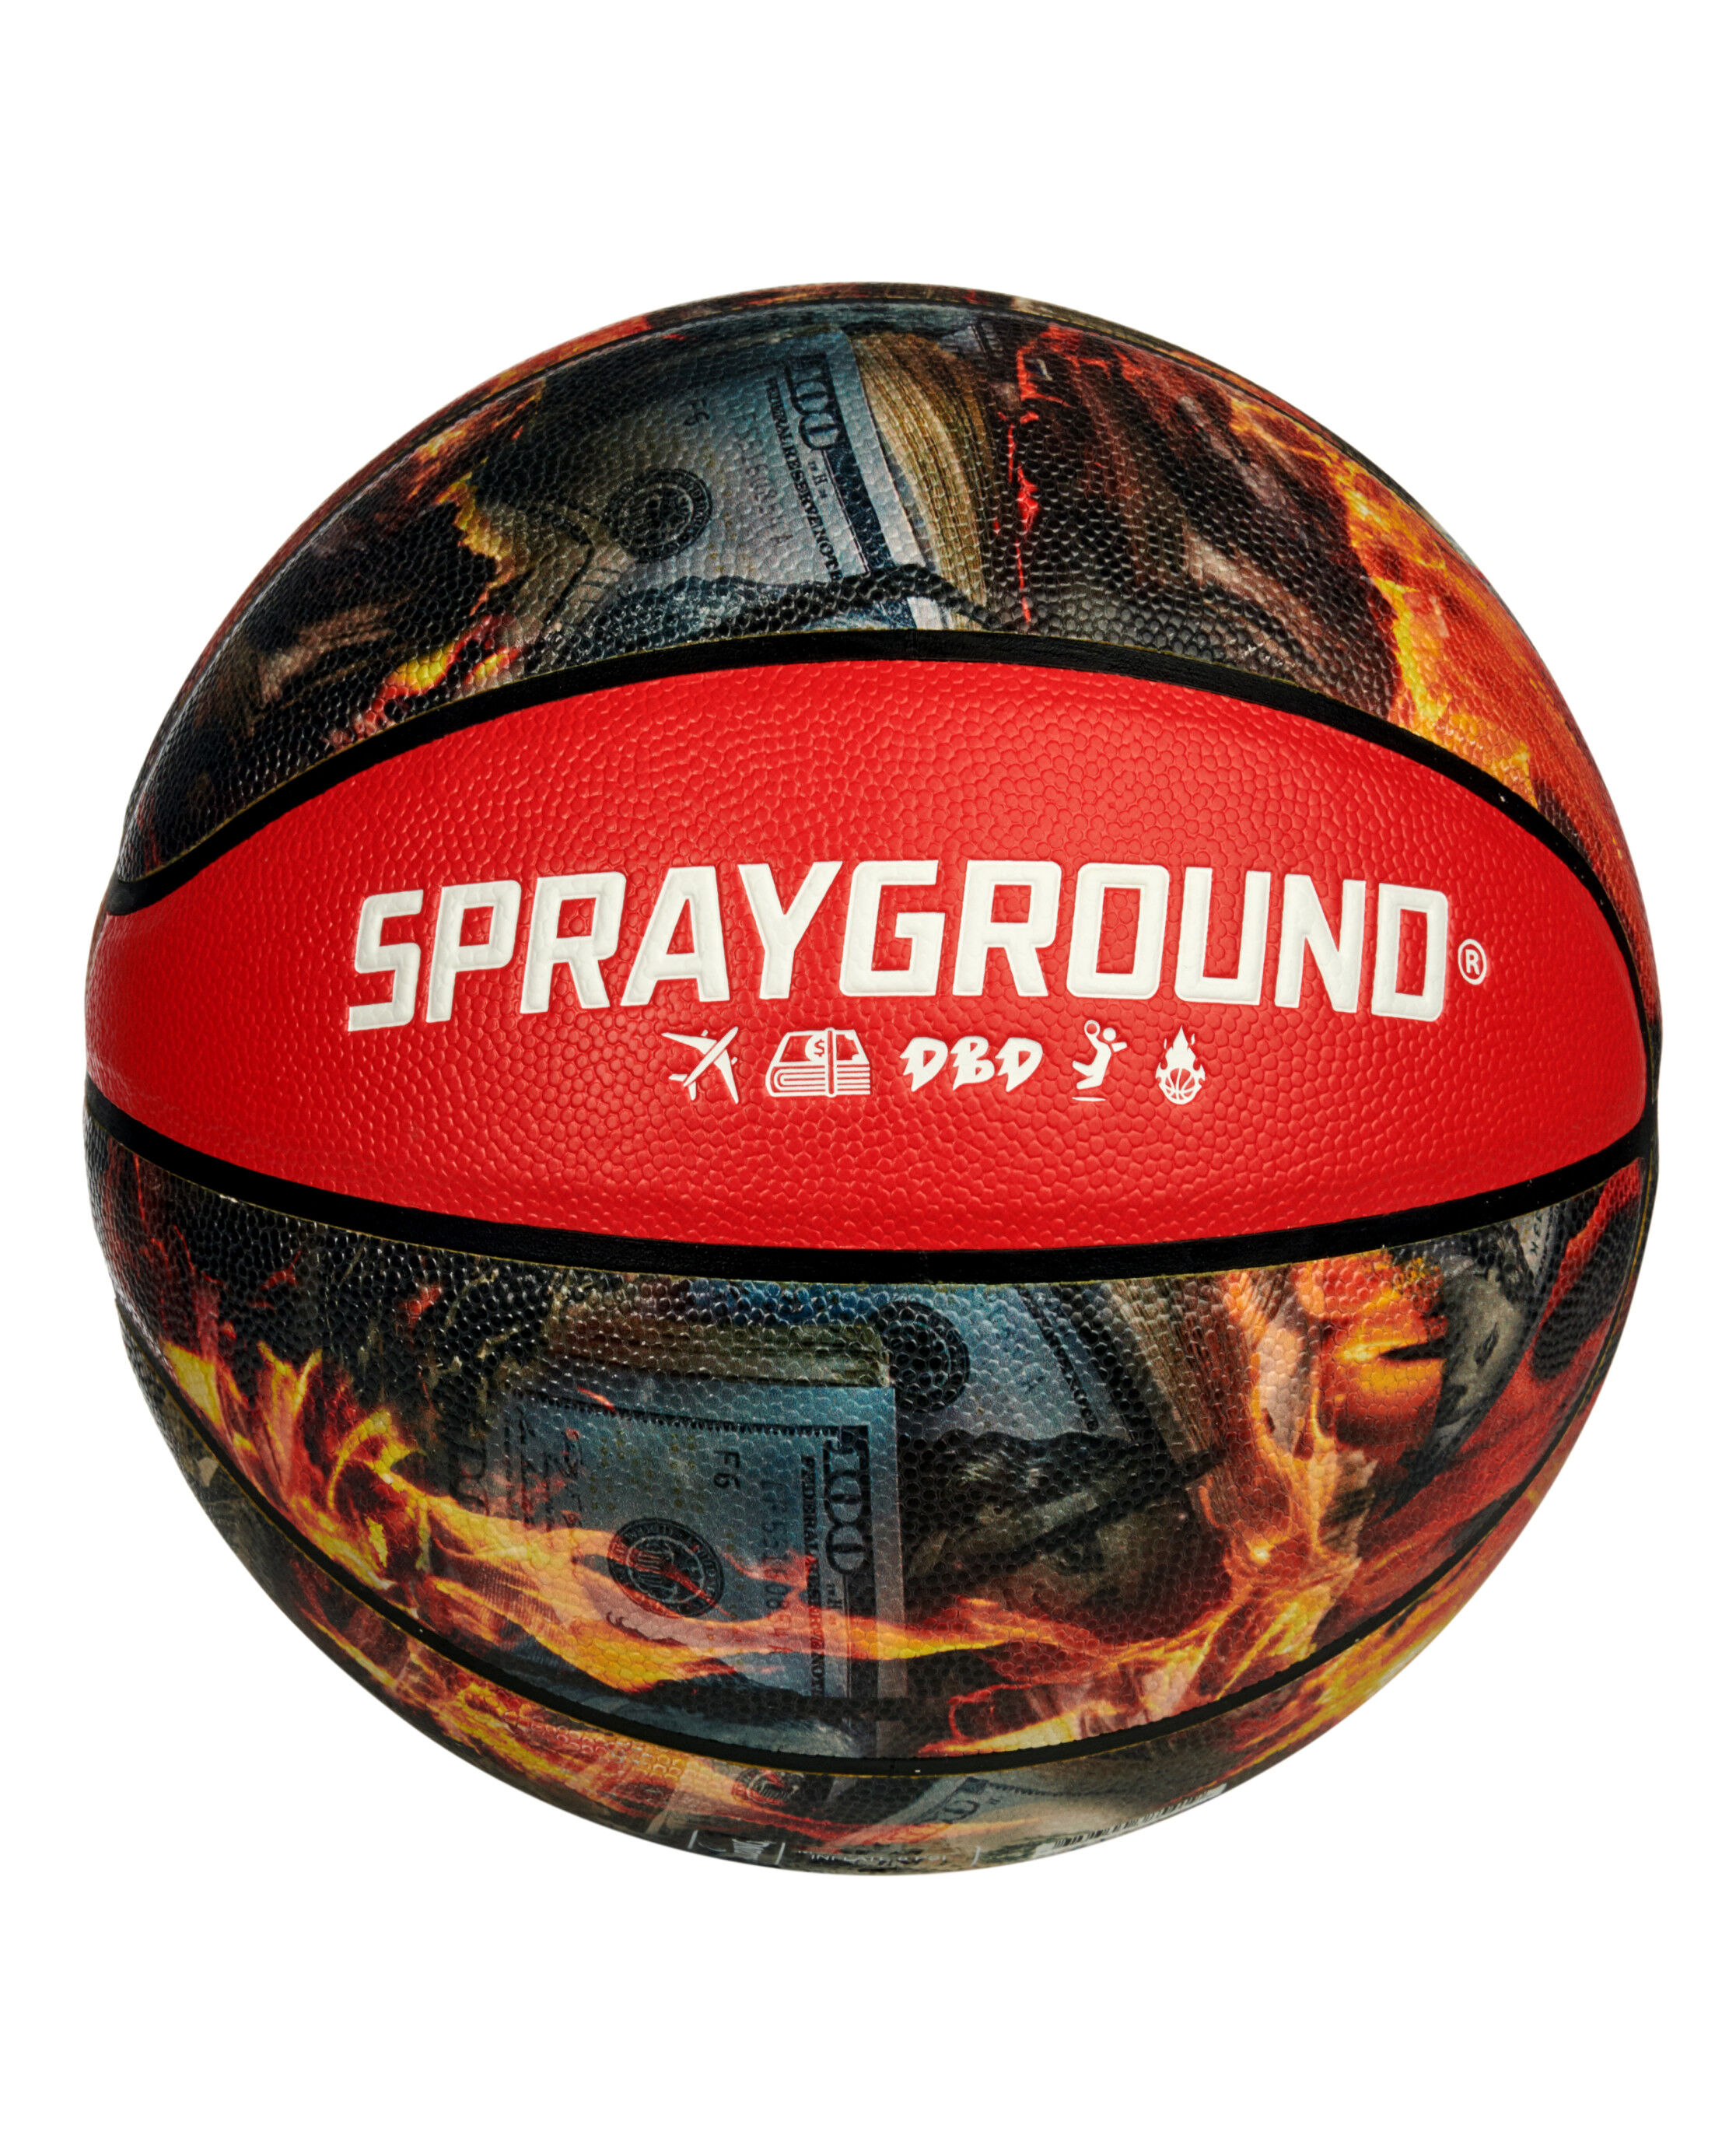 Spalding® x Sprayground 94 Series Fire 